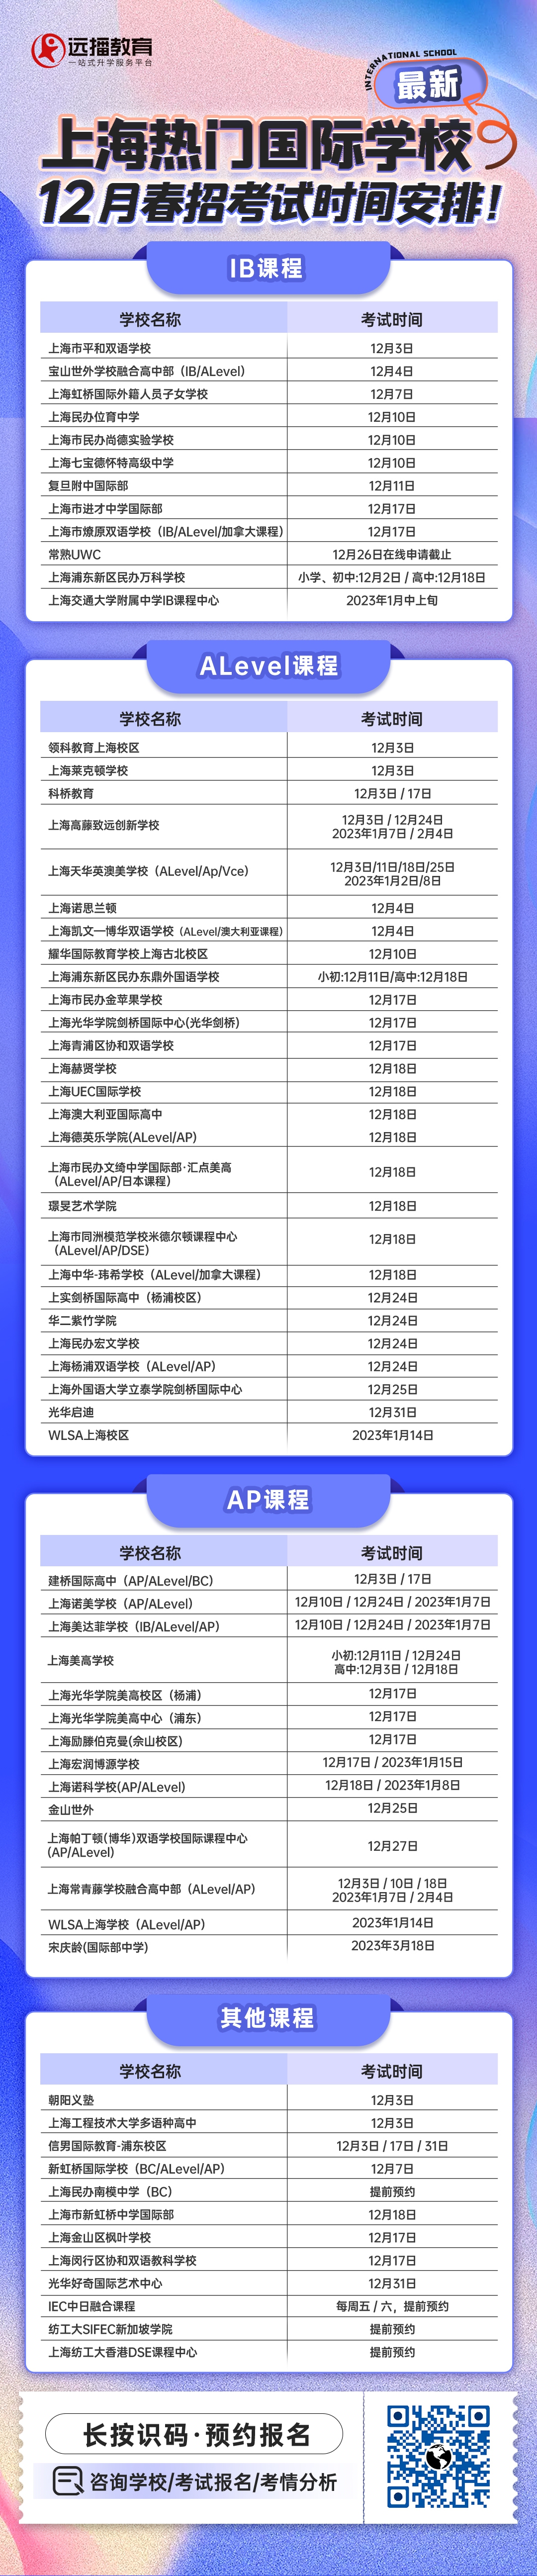 上海热门国际学校12月春招考试开放日汇总